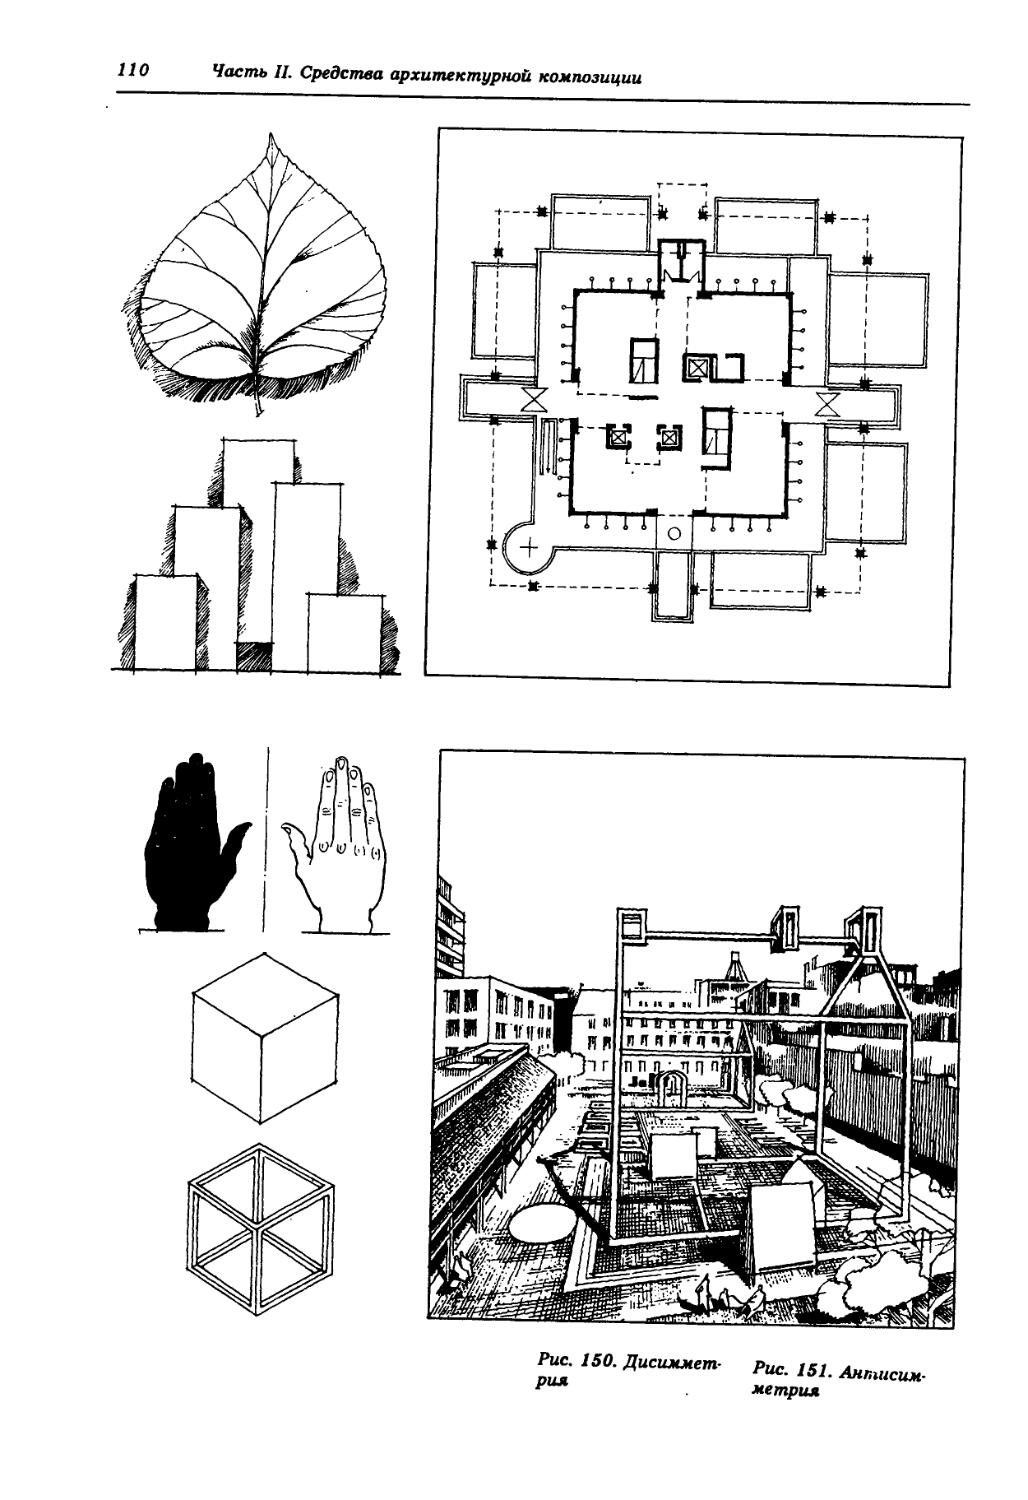 Создать макетную схему организации городского пространства